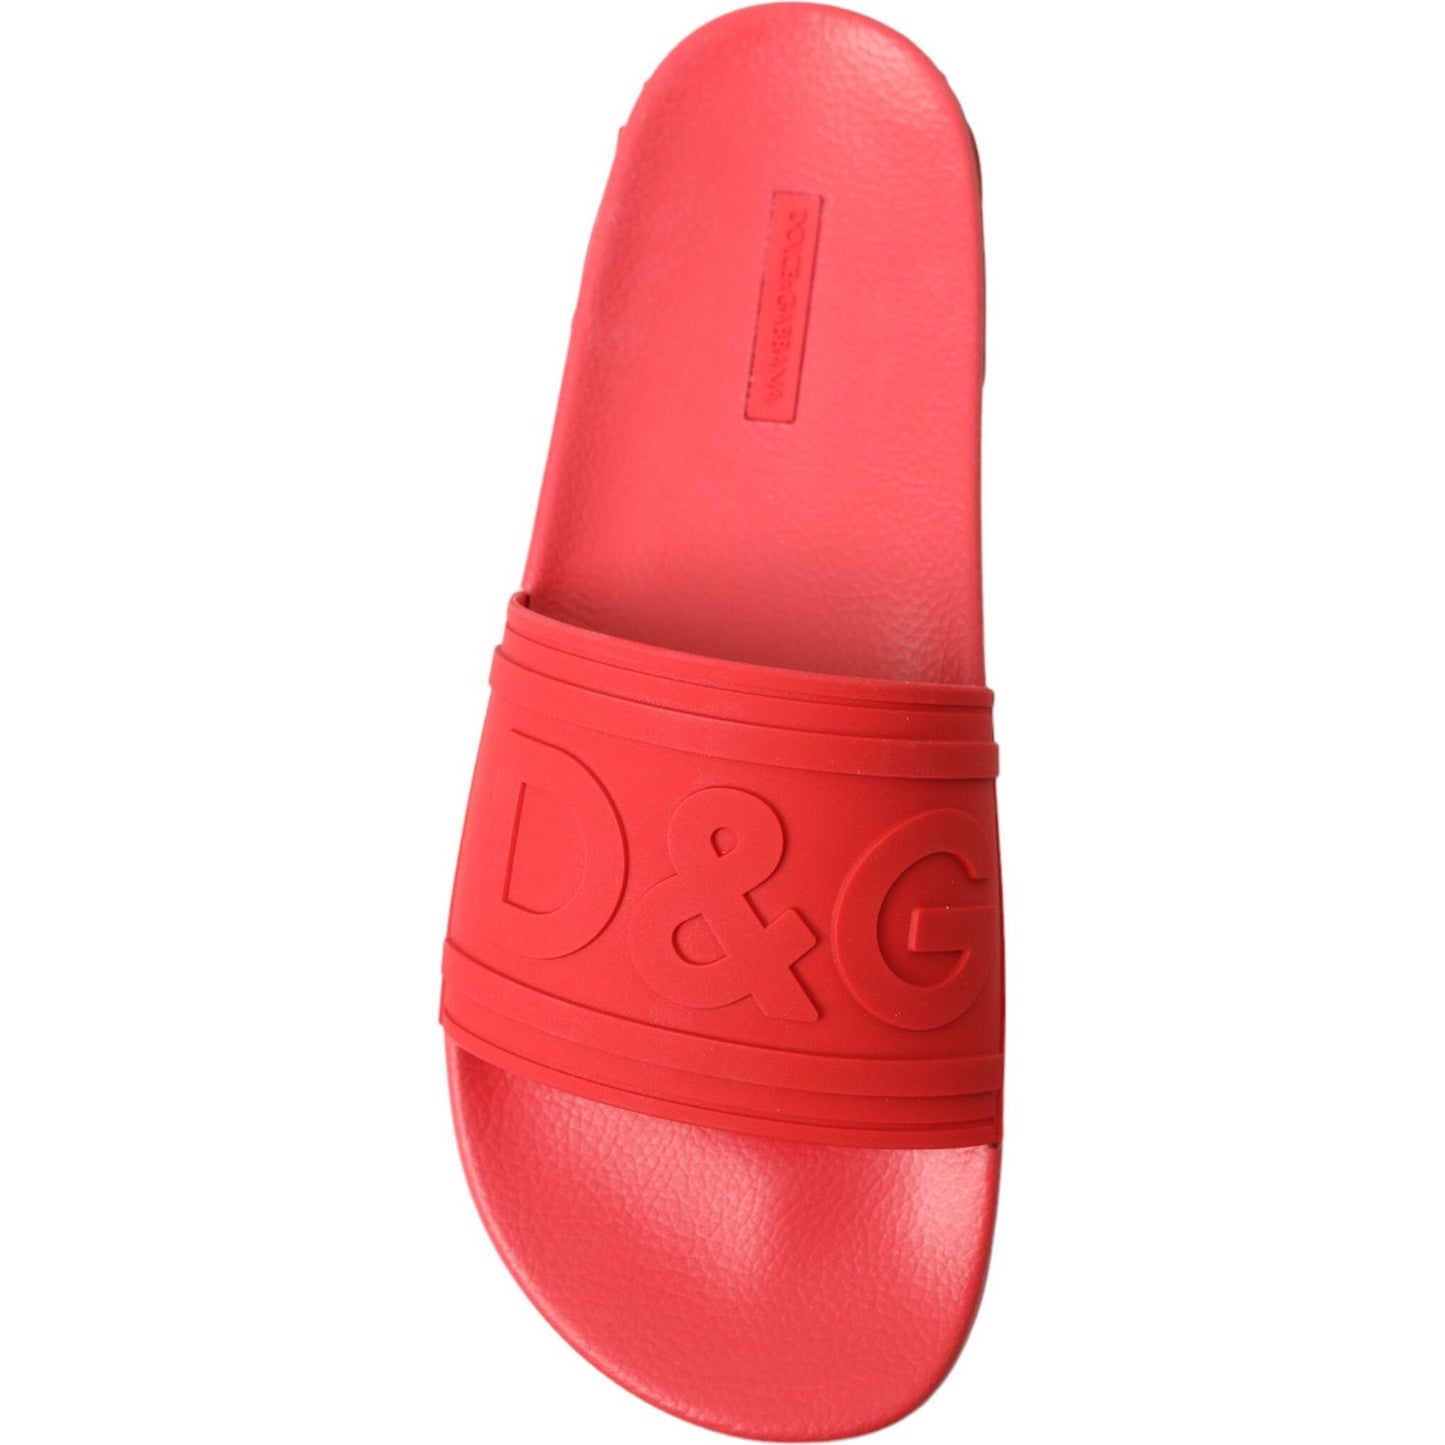 Dolce & Gabbana | Radiant Red Men's Slide Sandals| McRichard Designer Brands   